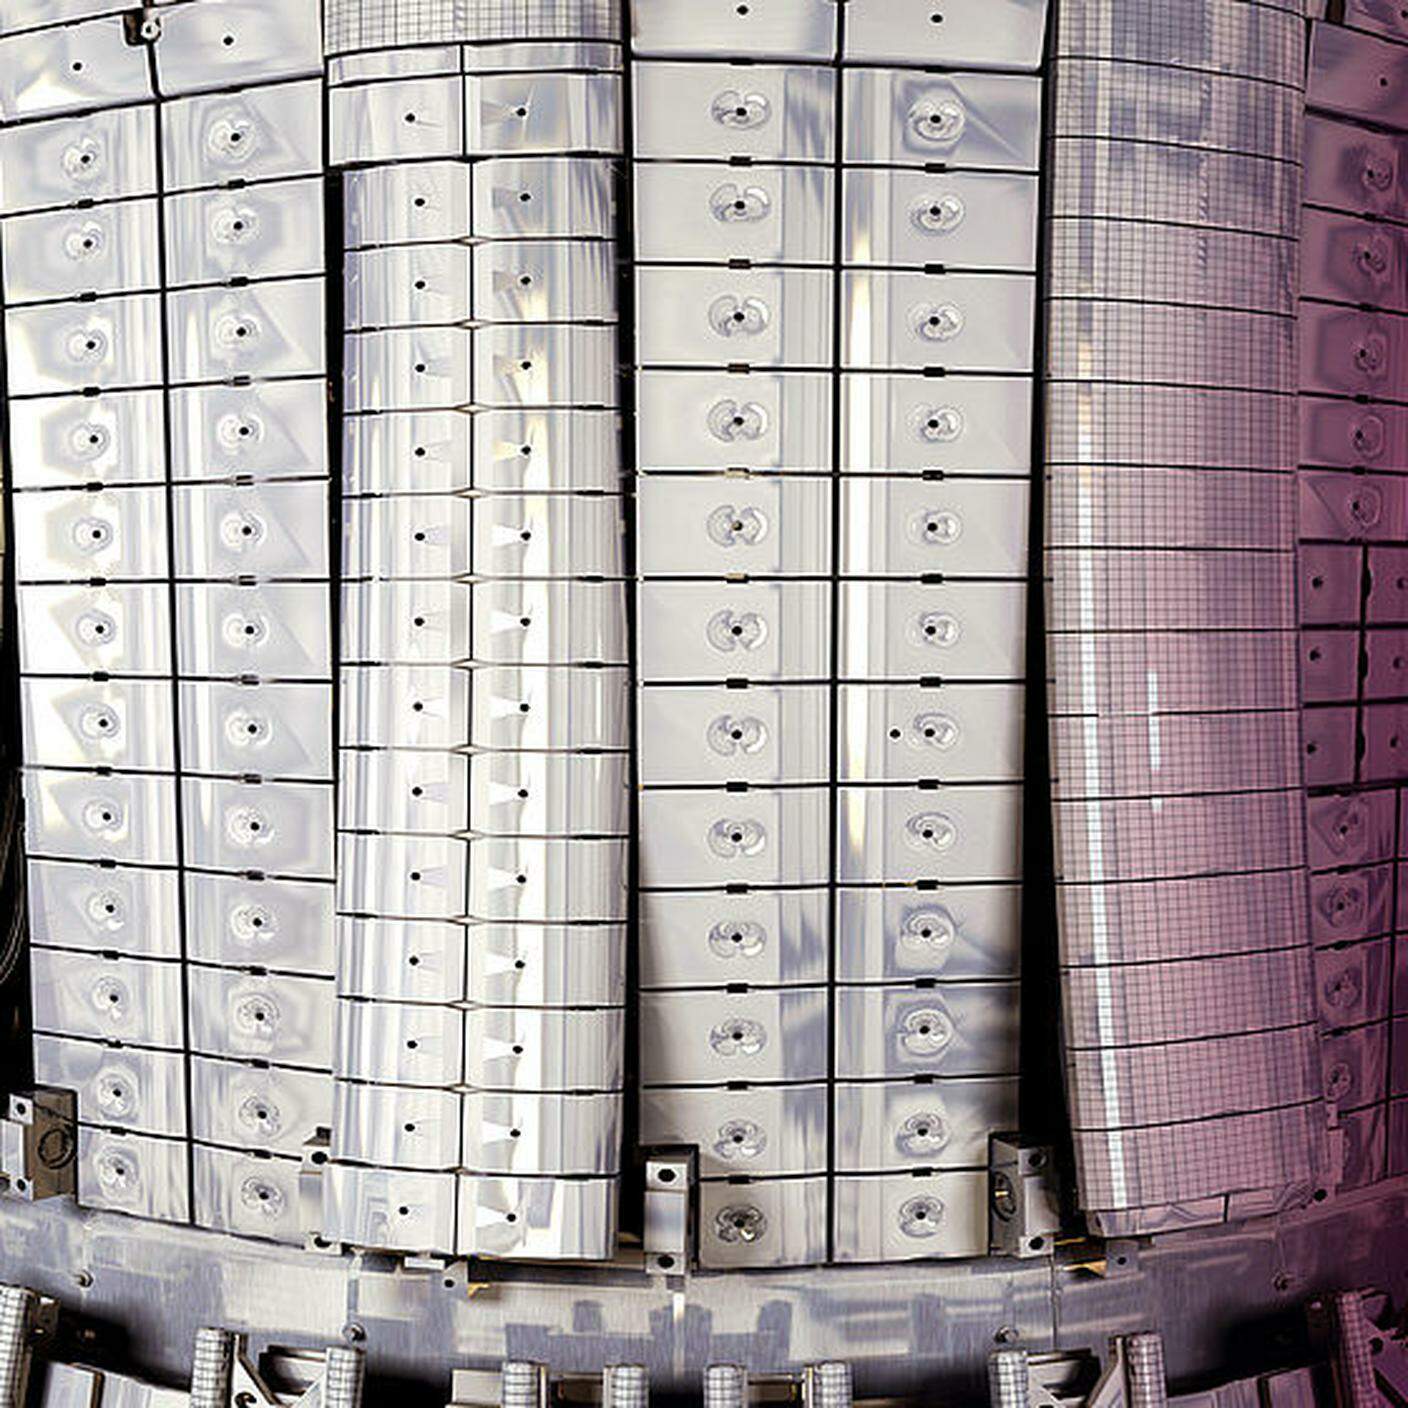 Reattore a fusione JET, i ricercatori europei sono stati in grado di generare una quantità record di energia di fusione nucleare